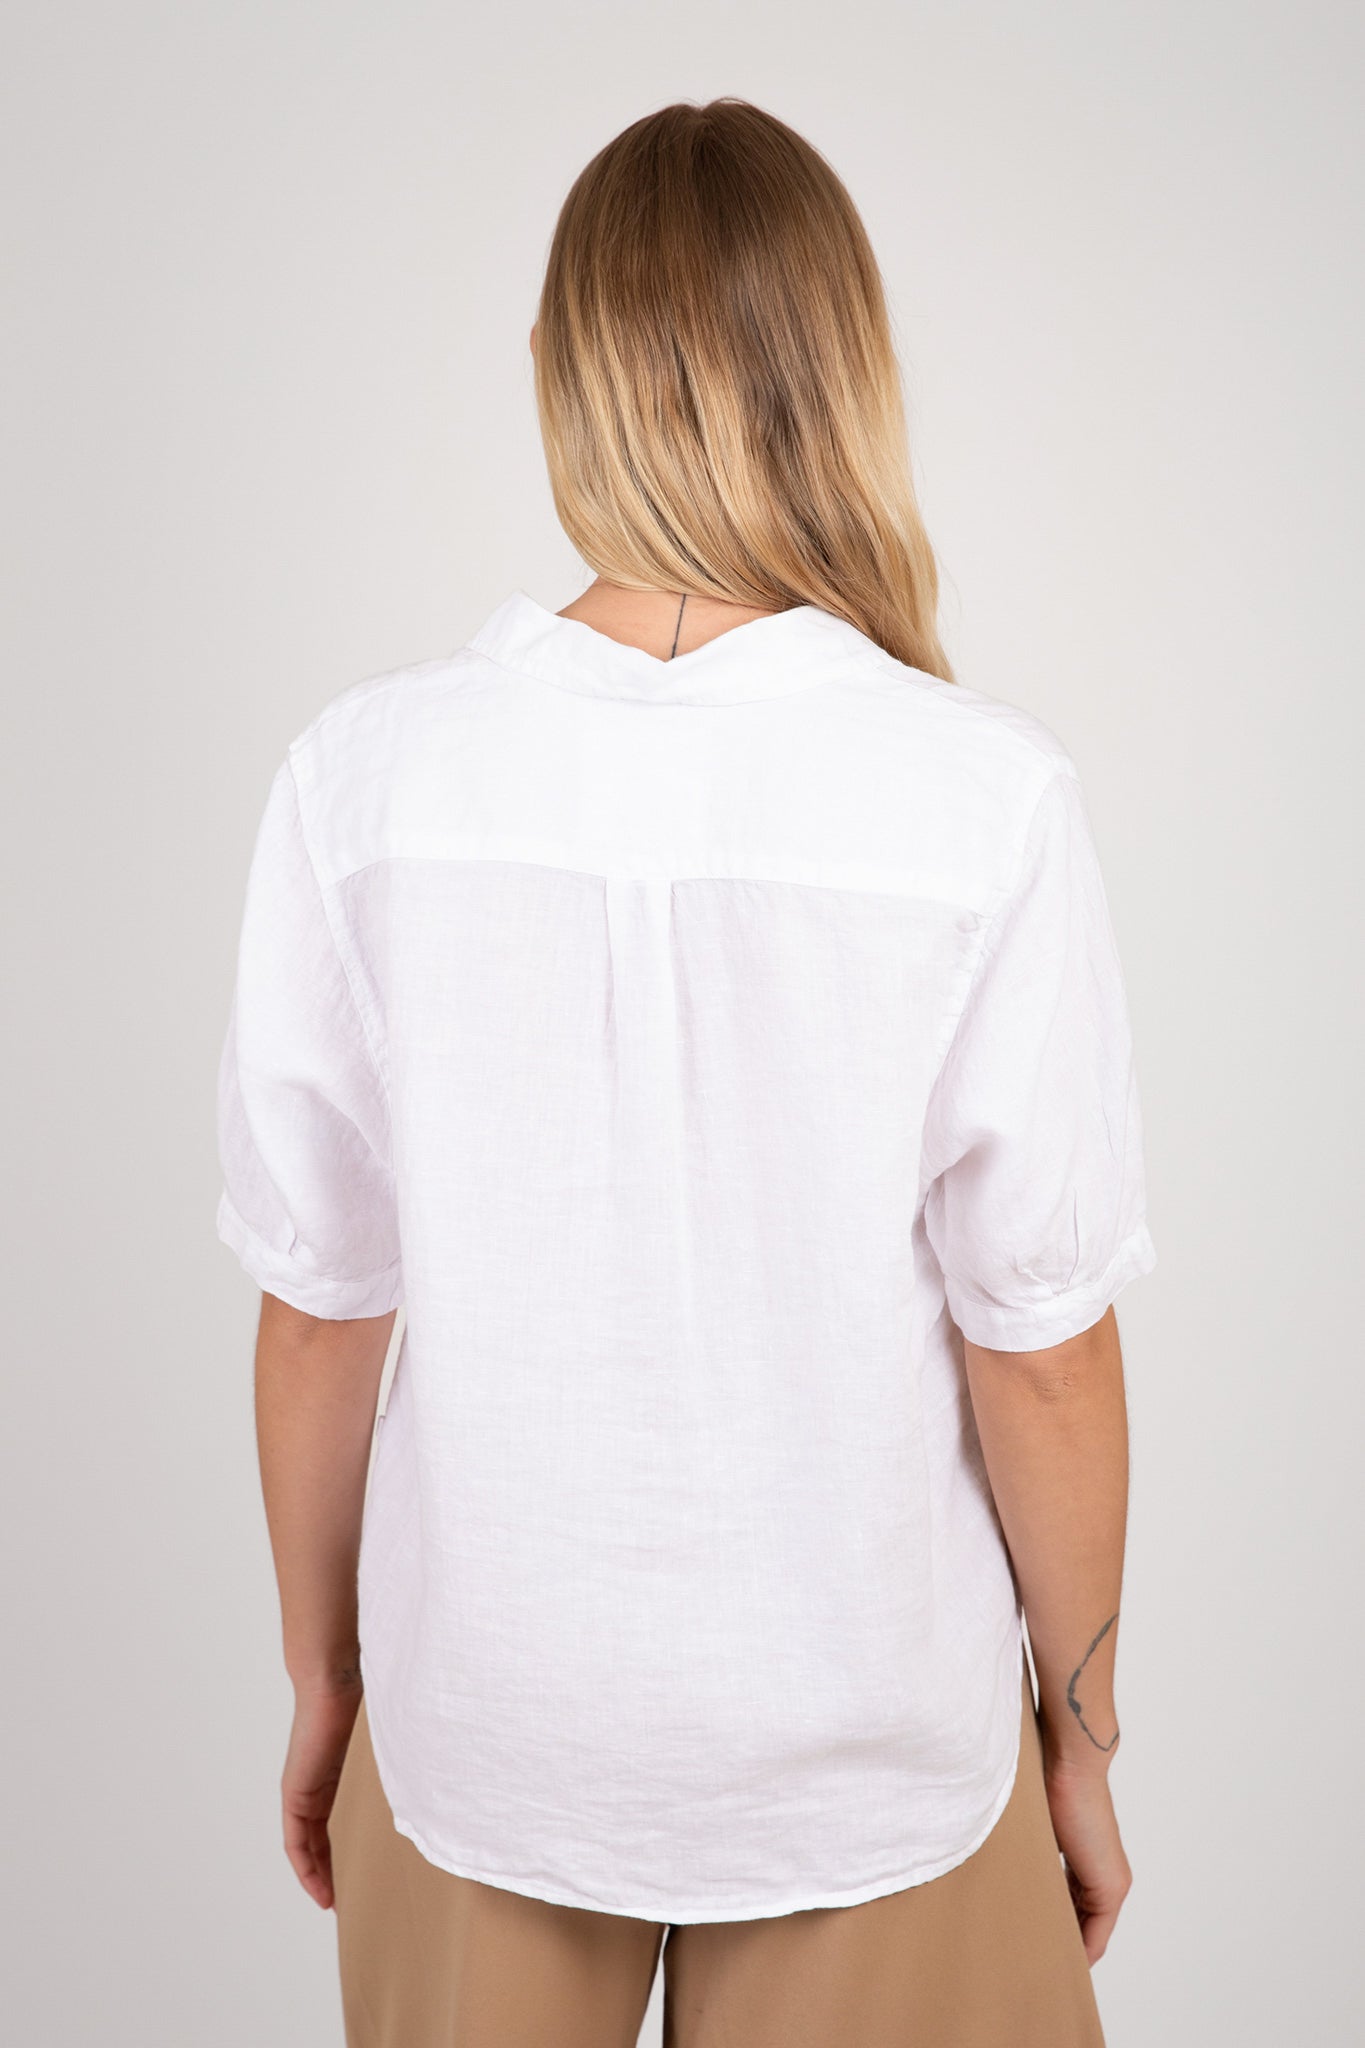 Shannon Button-Up Shirt Tops Velvet   